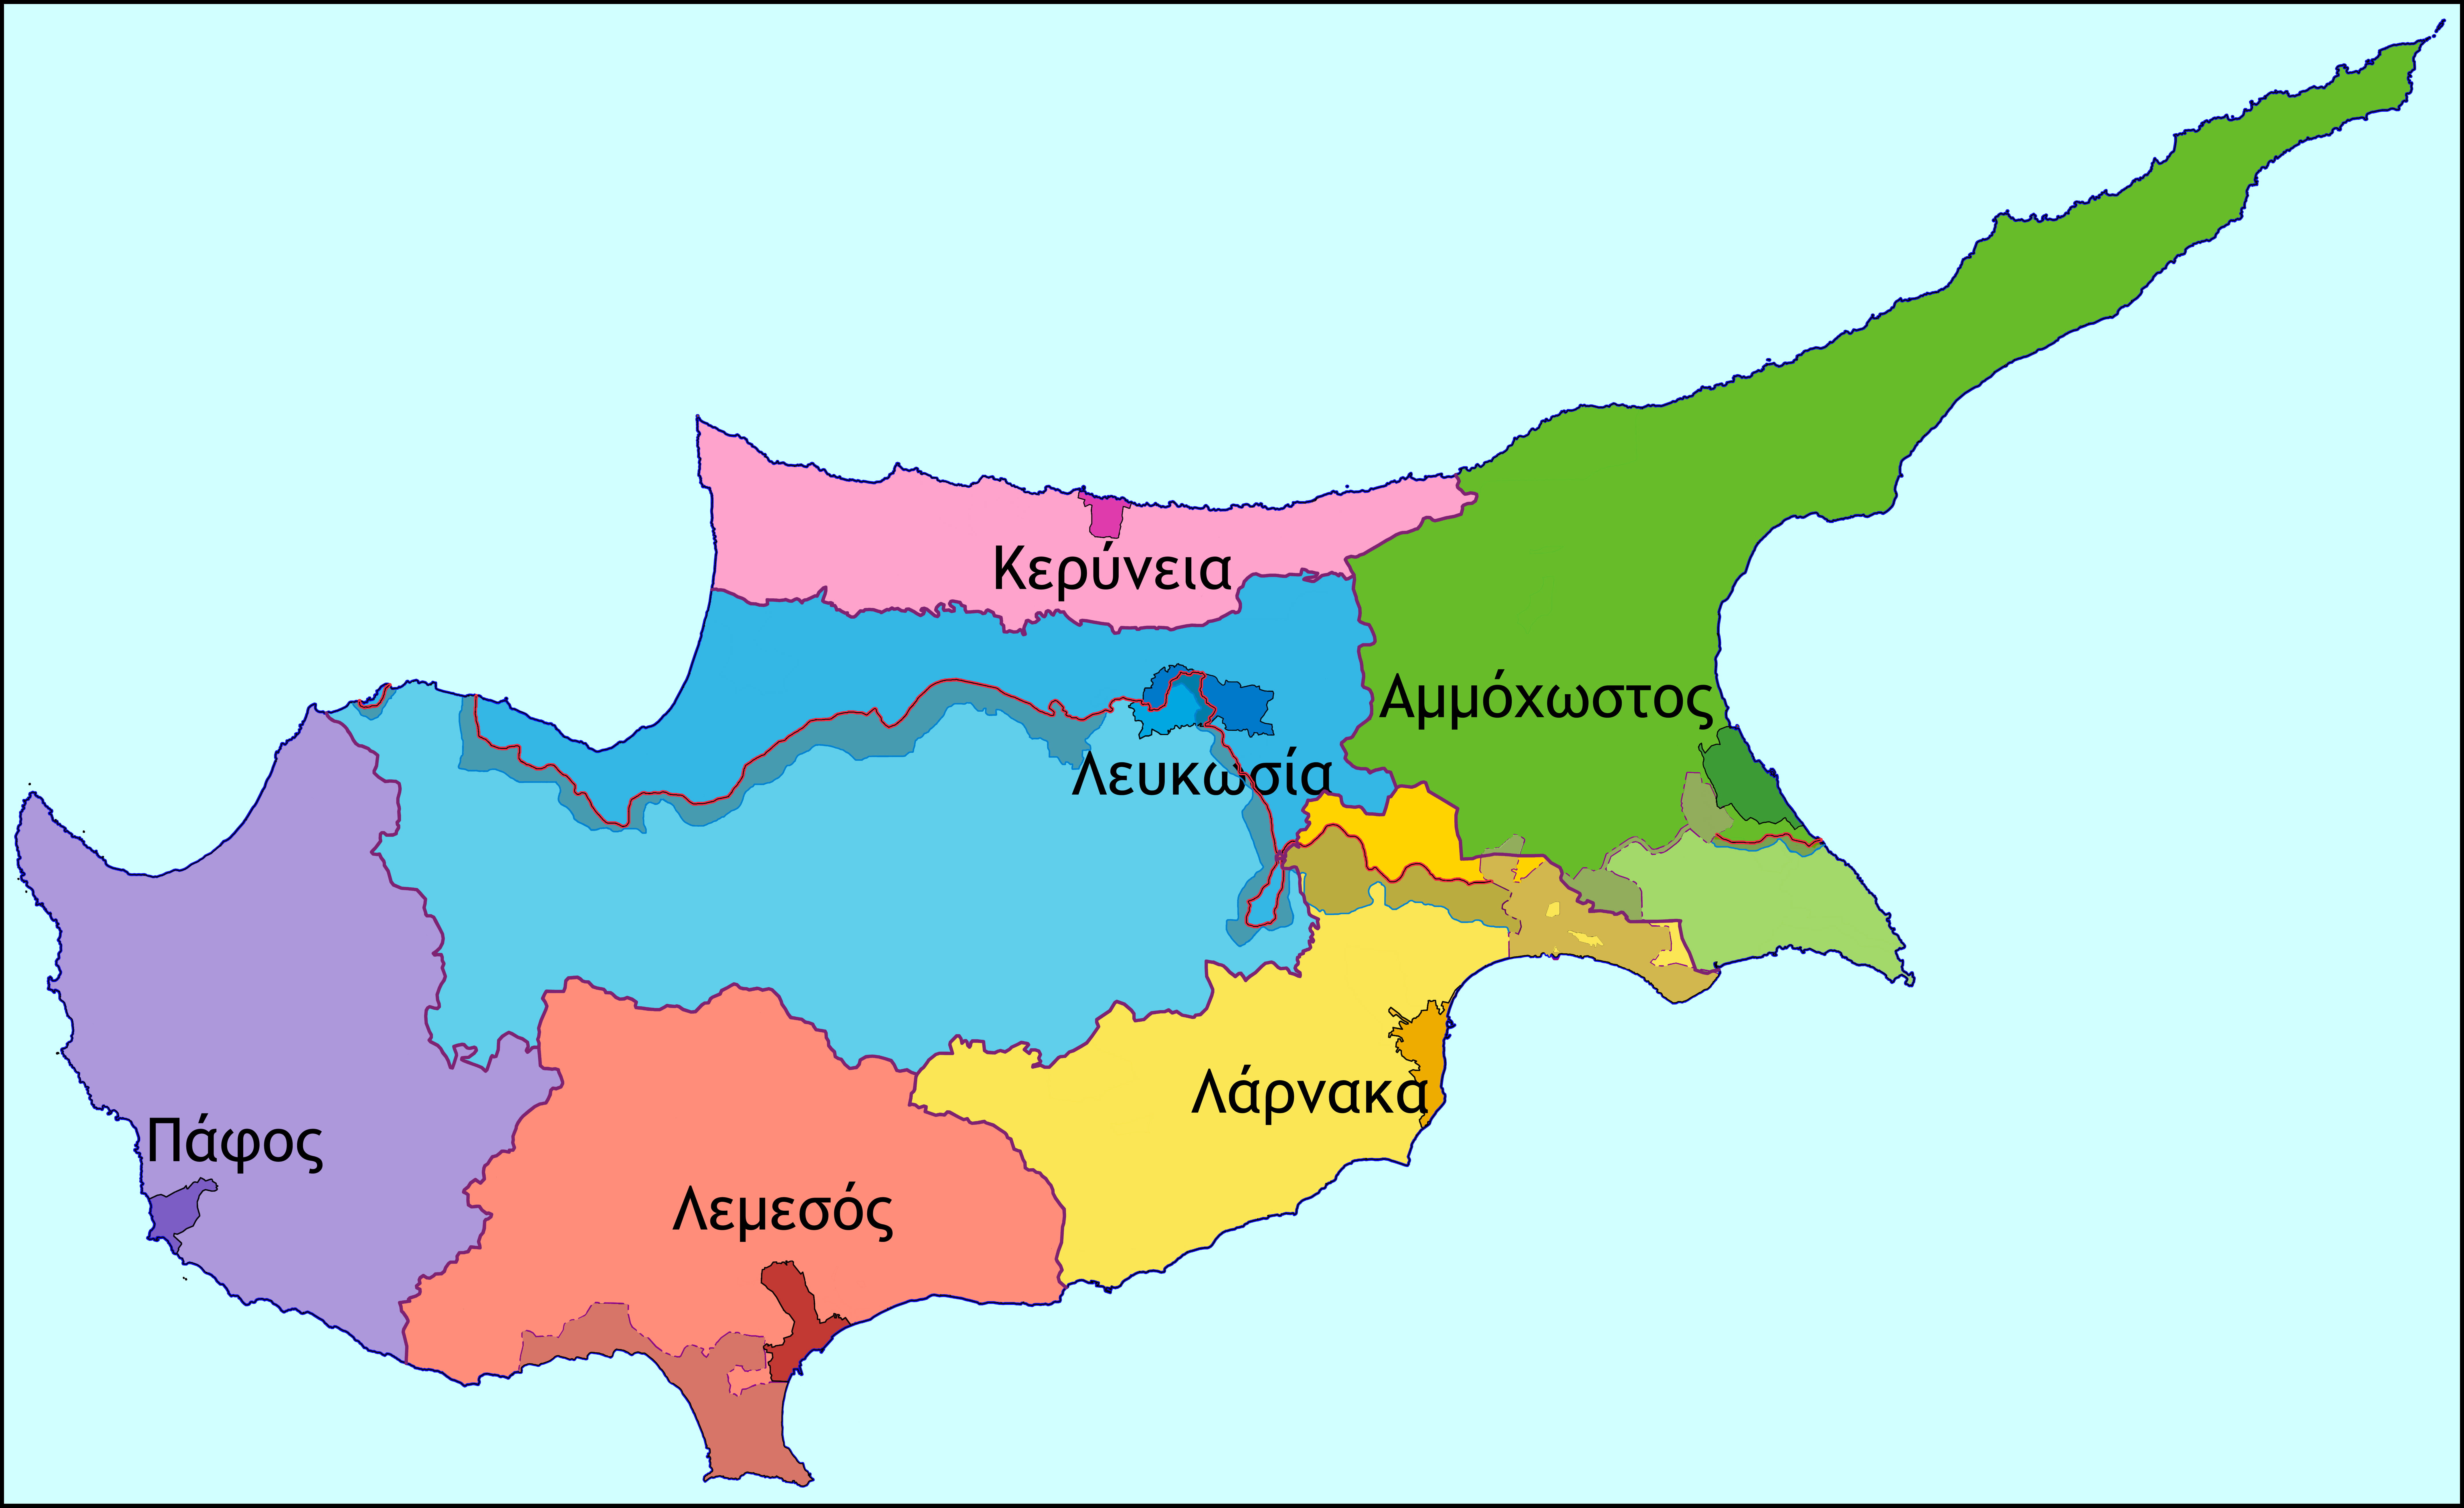 Μια λύση για την Κύπρο